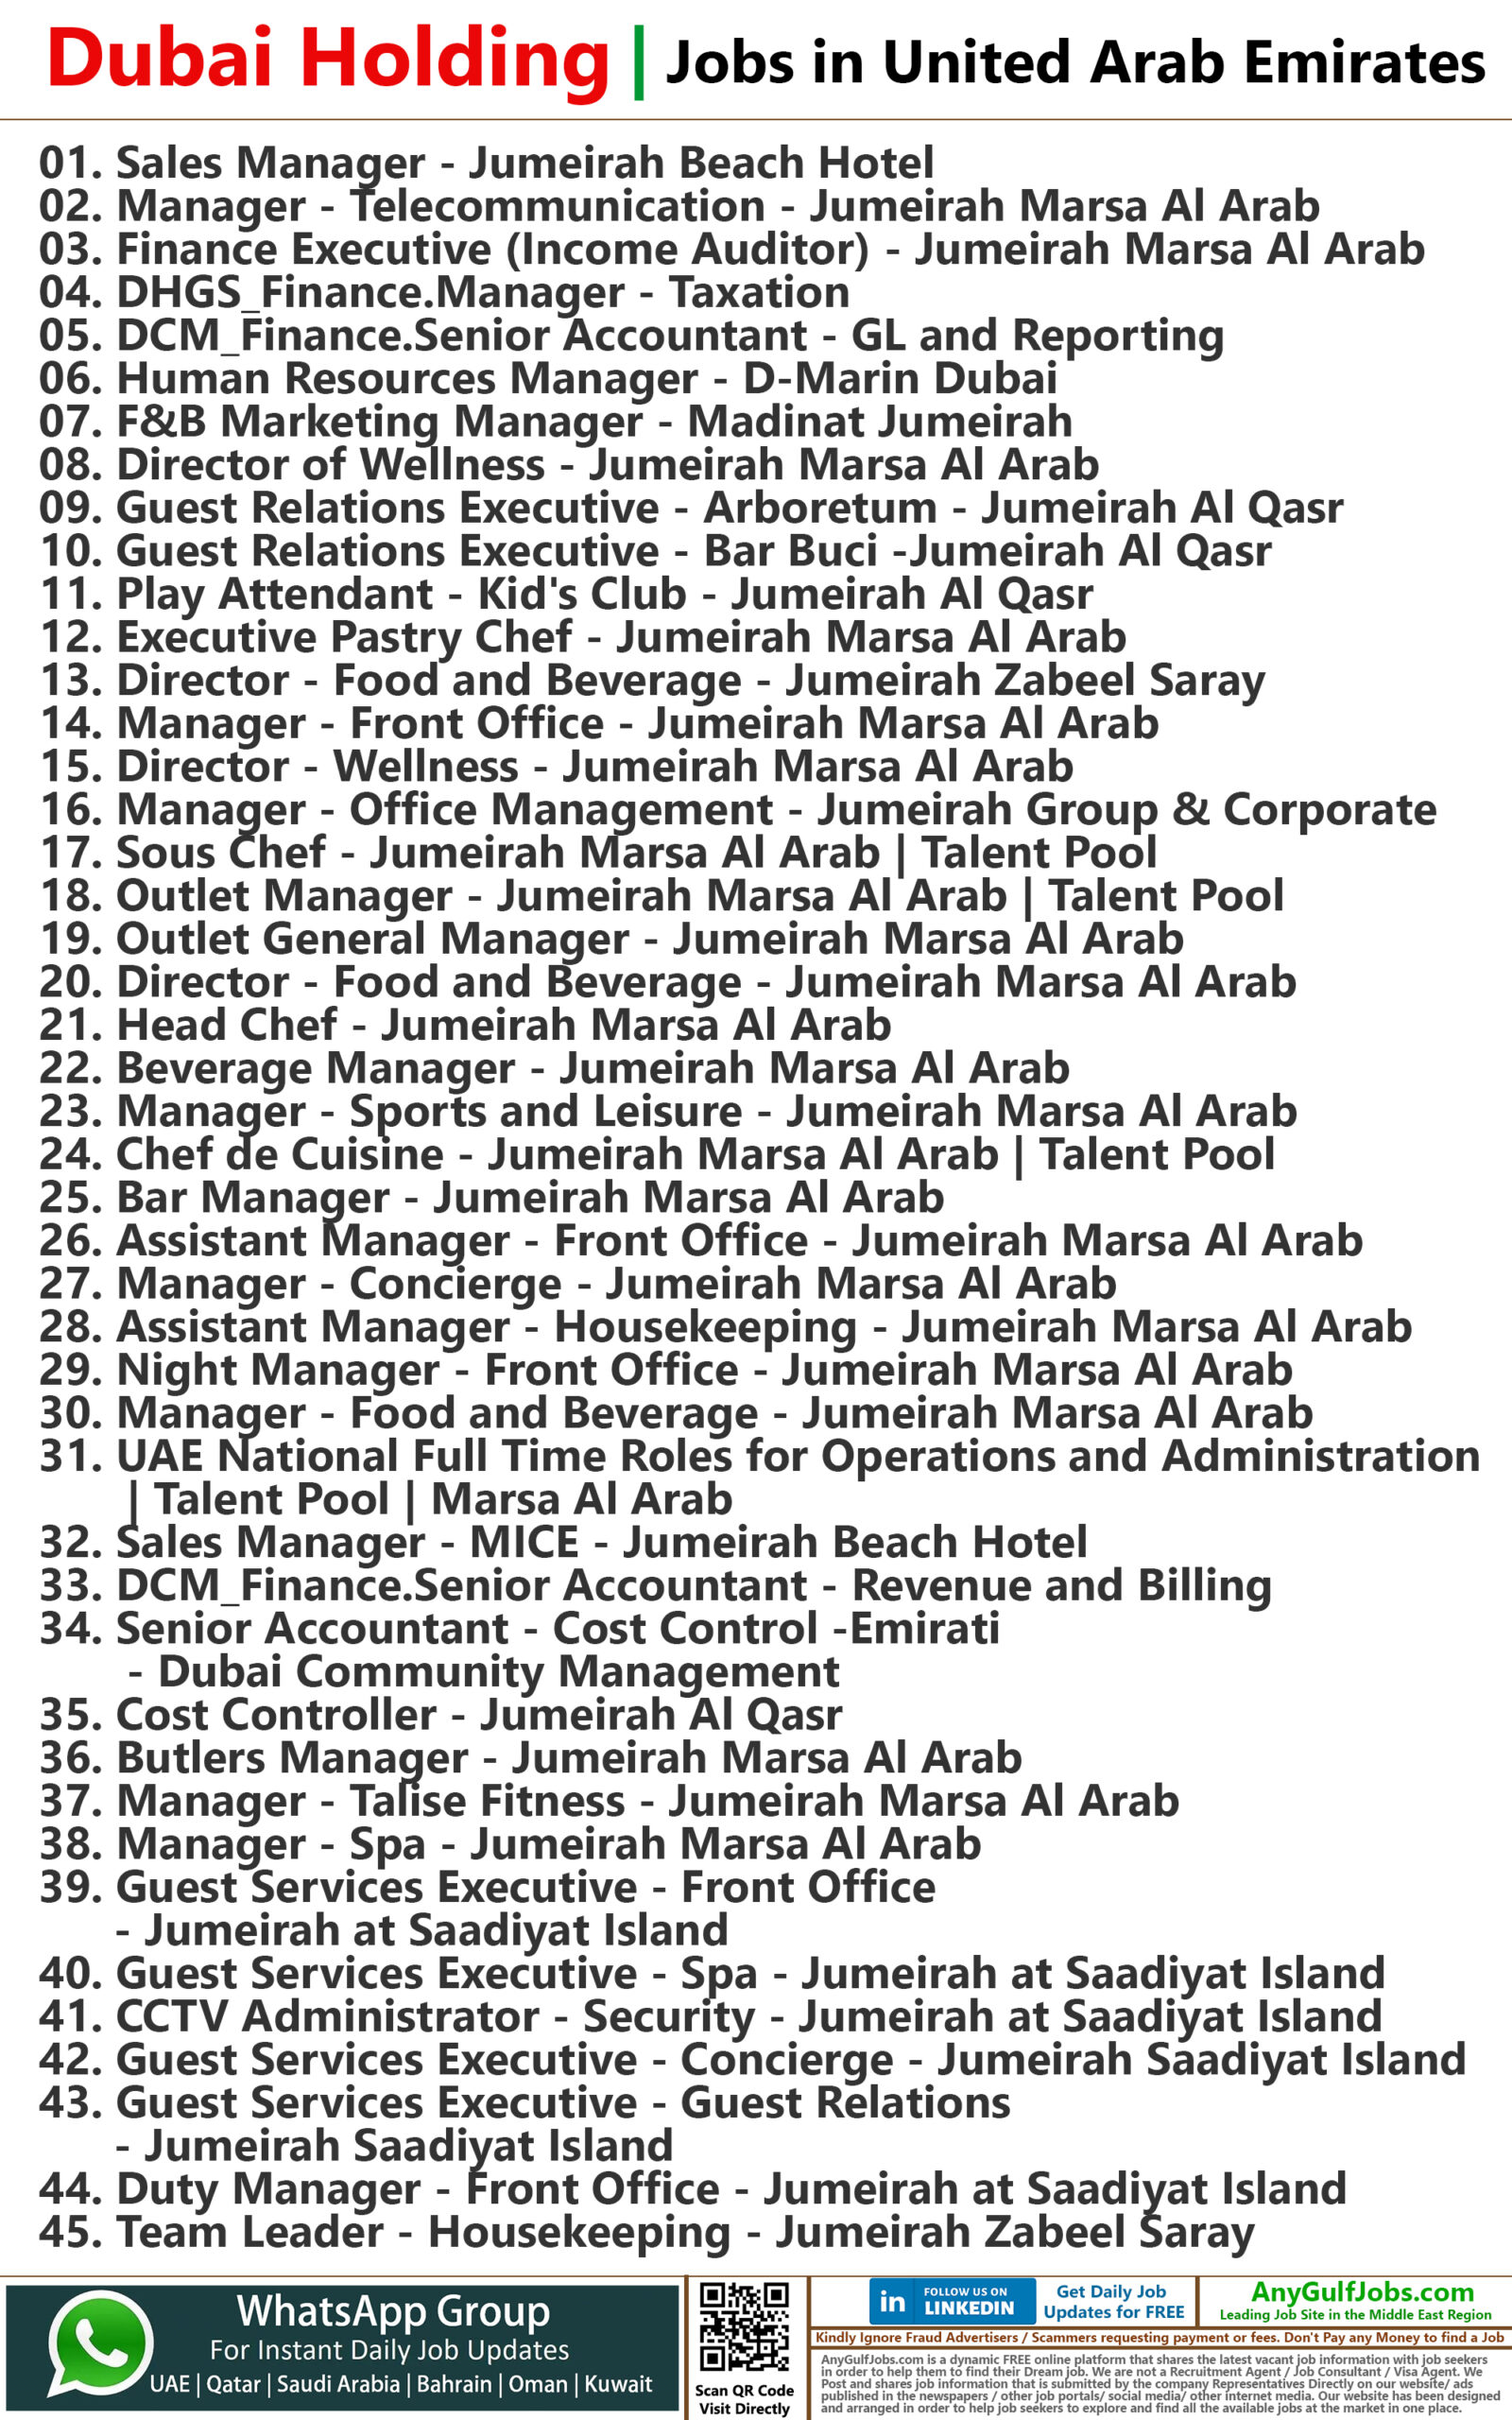 Dubai Holding Jobs in United Arab Emirates